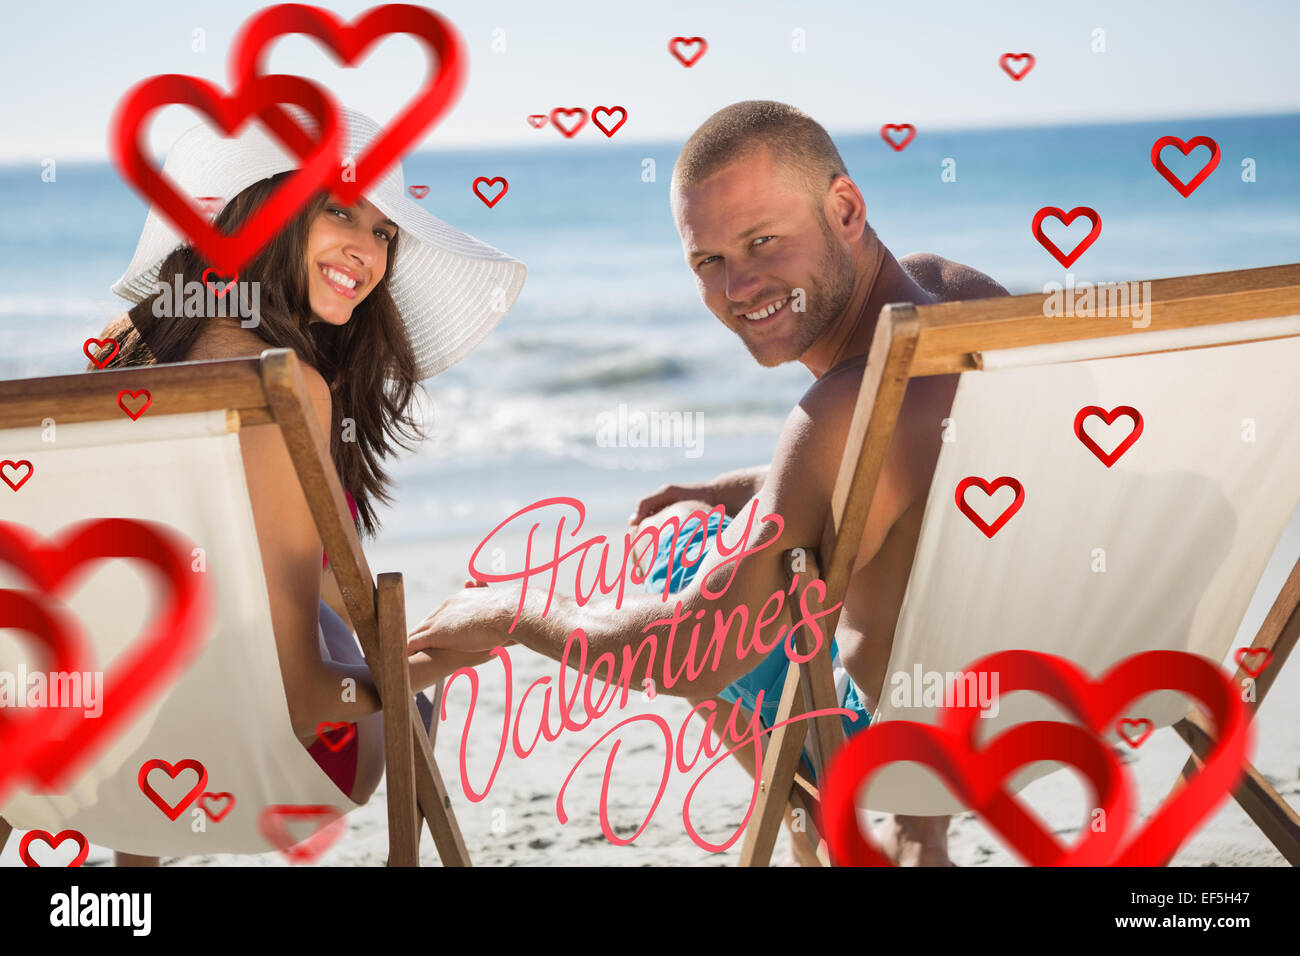 Imagen compuesta de linda pareja mirando mientras yacían en sus tumbonas Foto de stock